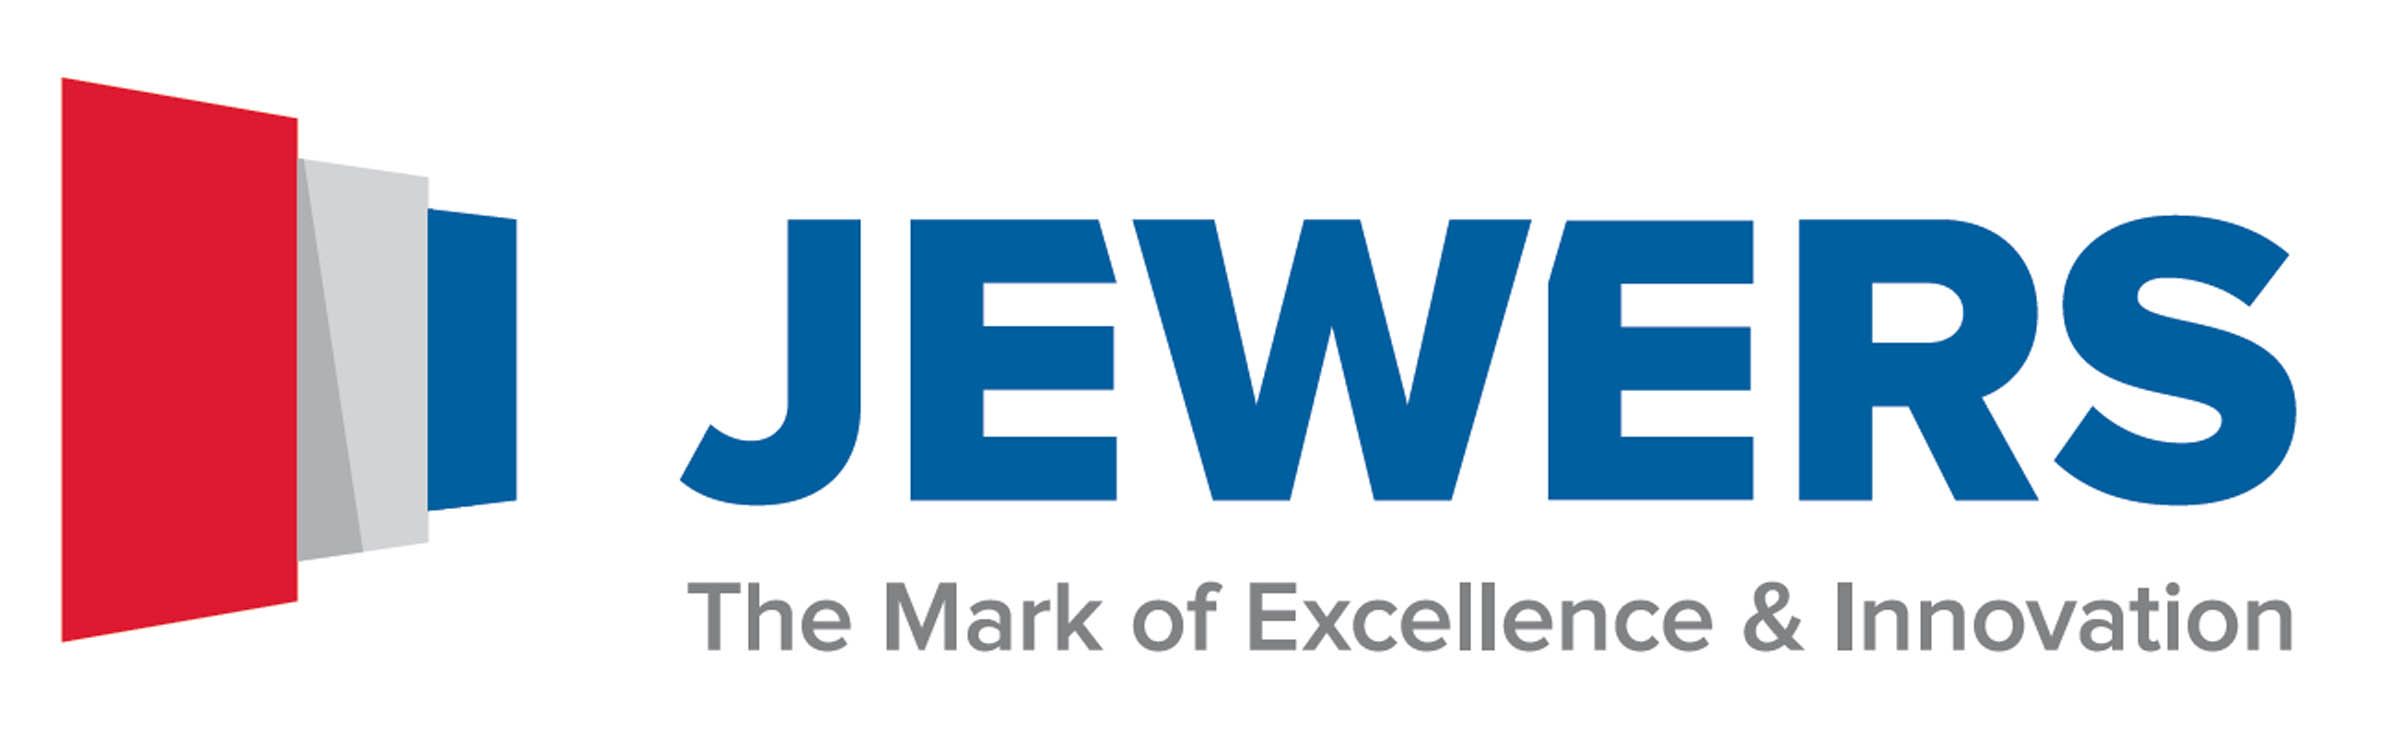 Jewers-Doors Logo